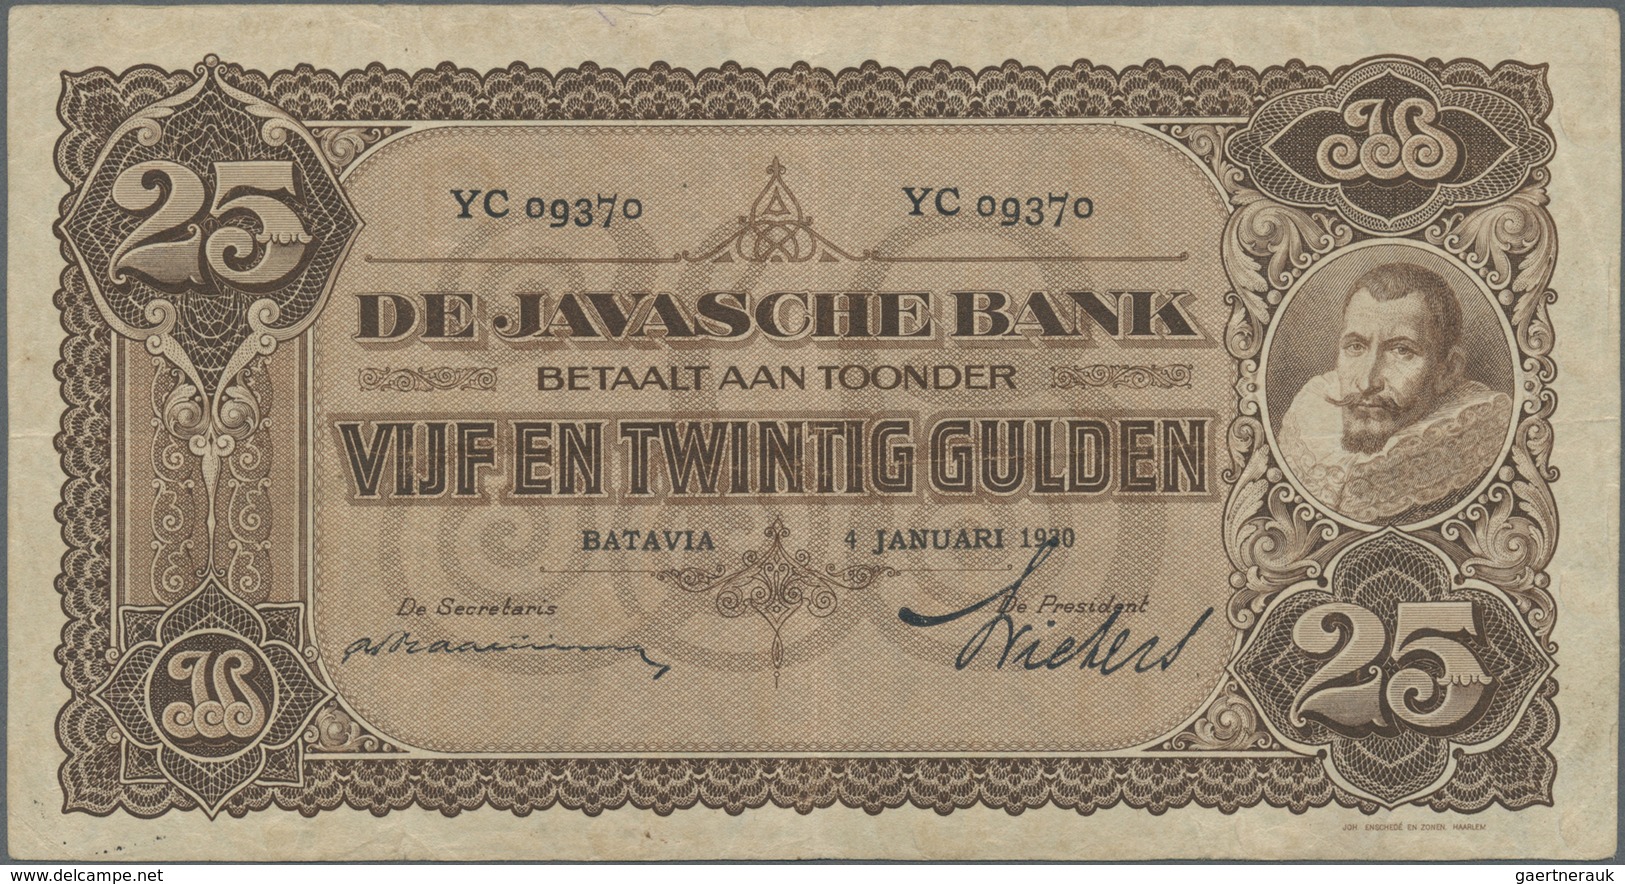 Netherlands Indies / Niederländisch Indien: highly rare set of 9 Banknotes containing 4 x 25 Gulden